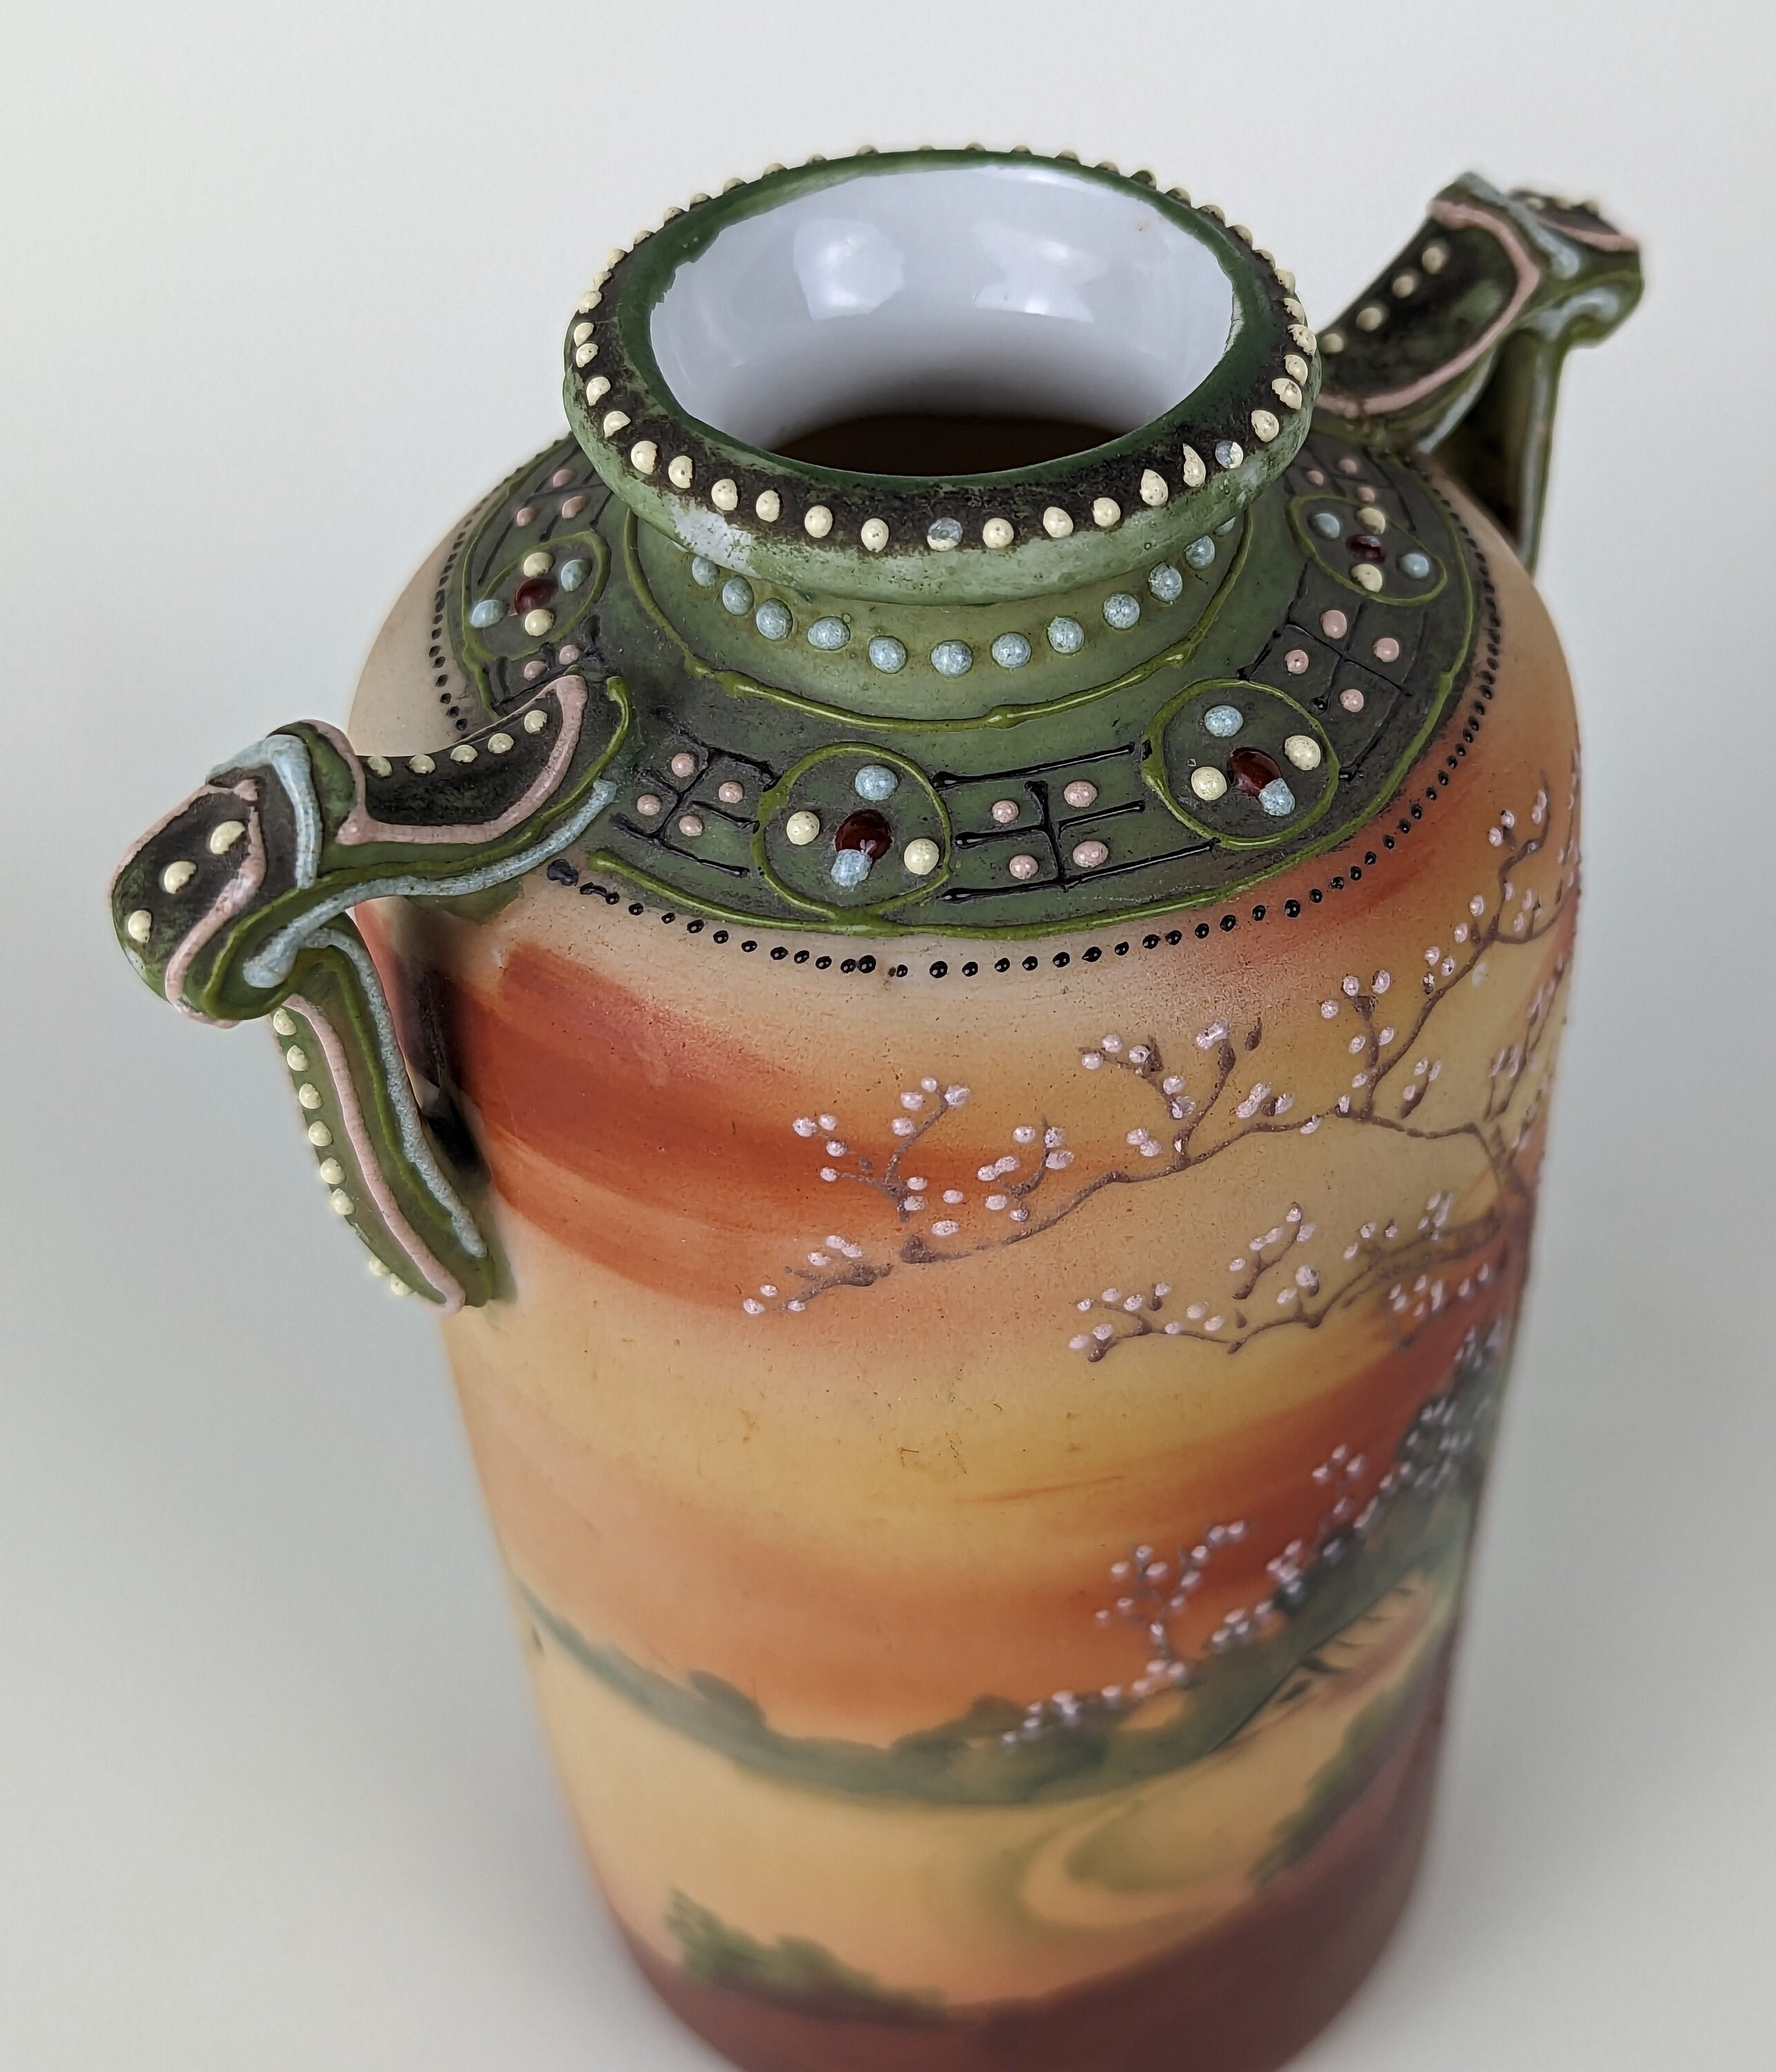 Moriyama Mori-Machi Japanese vase with moriage details - 1920s